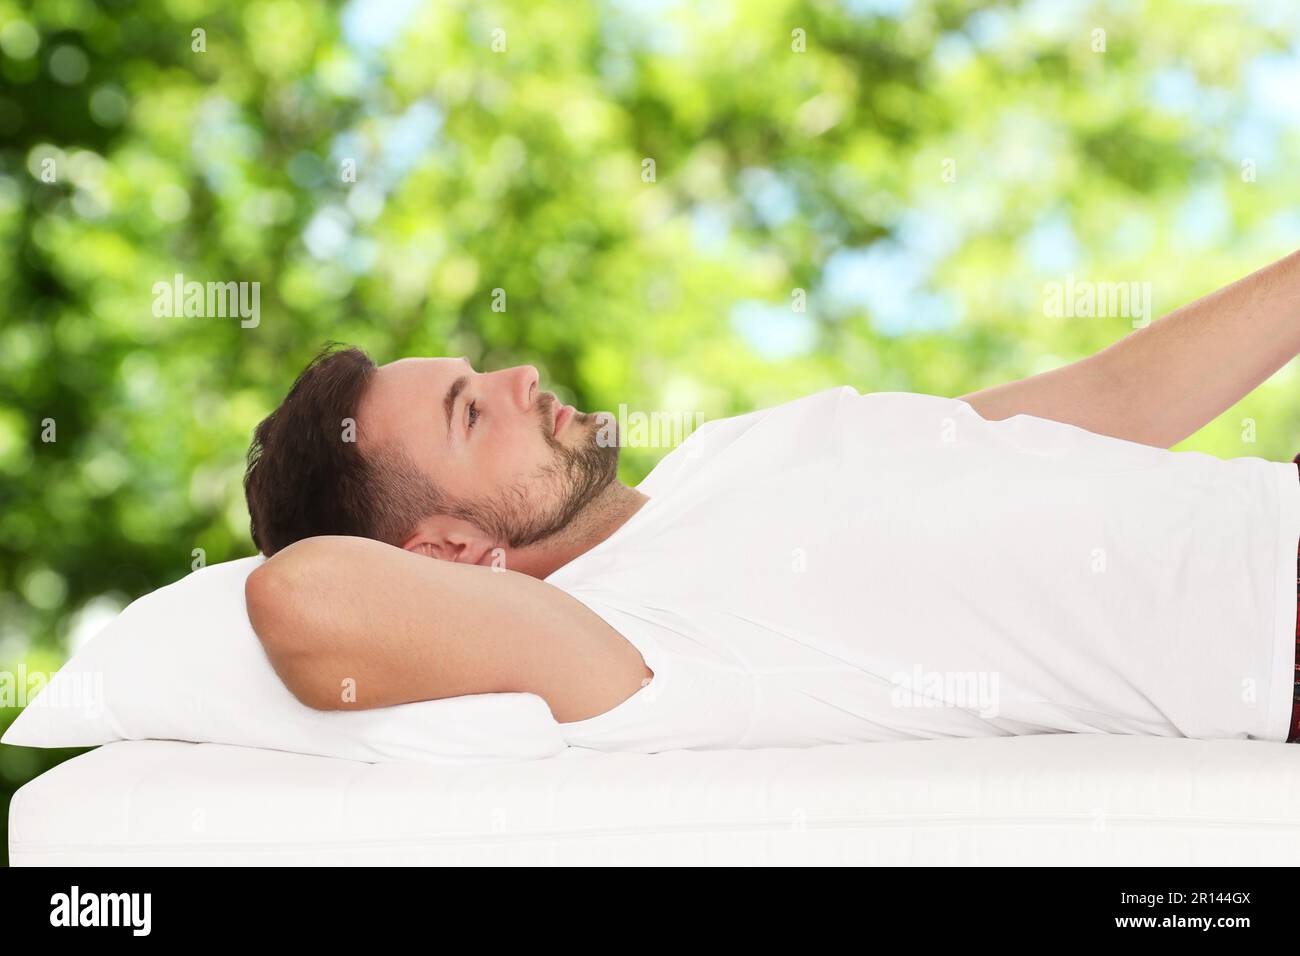 Uomo sdraiato su un comodo materasso su sfondo verde sfocato, effetto bokeh. Dormi bene - resta in salute Foto Stock